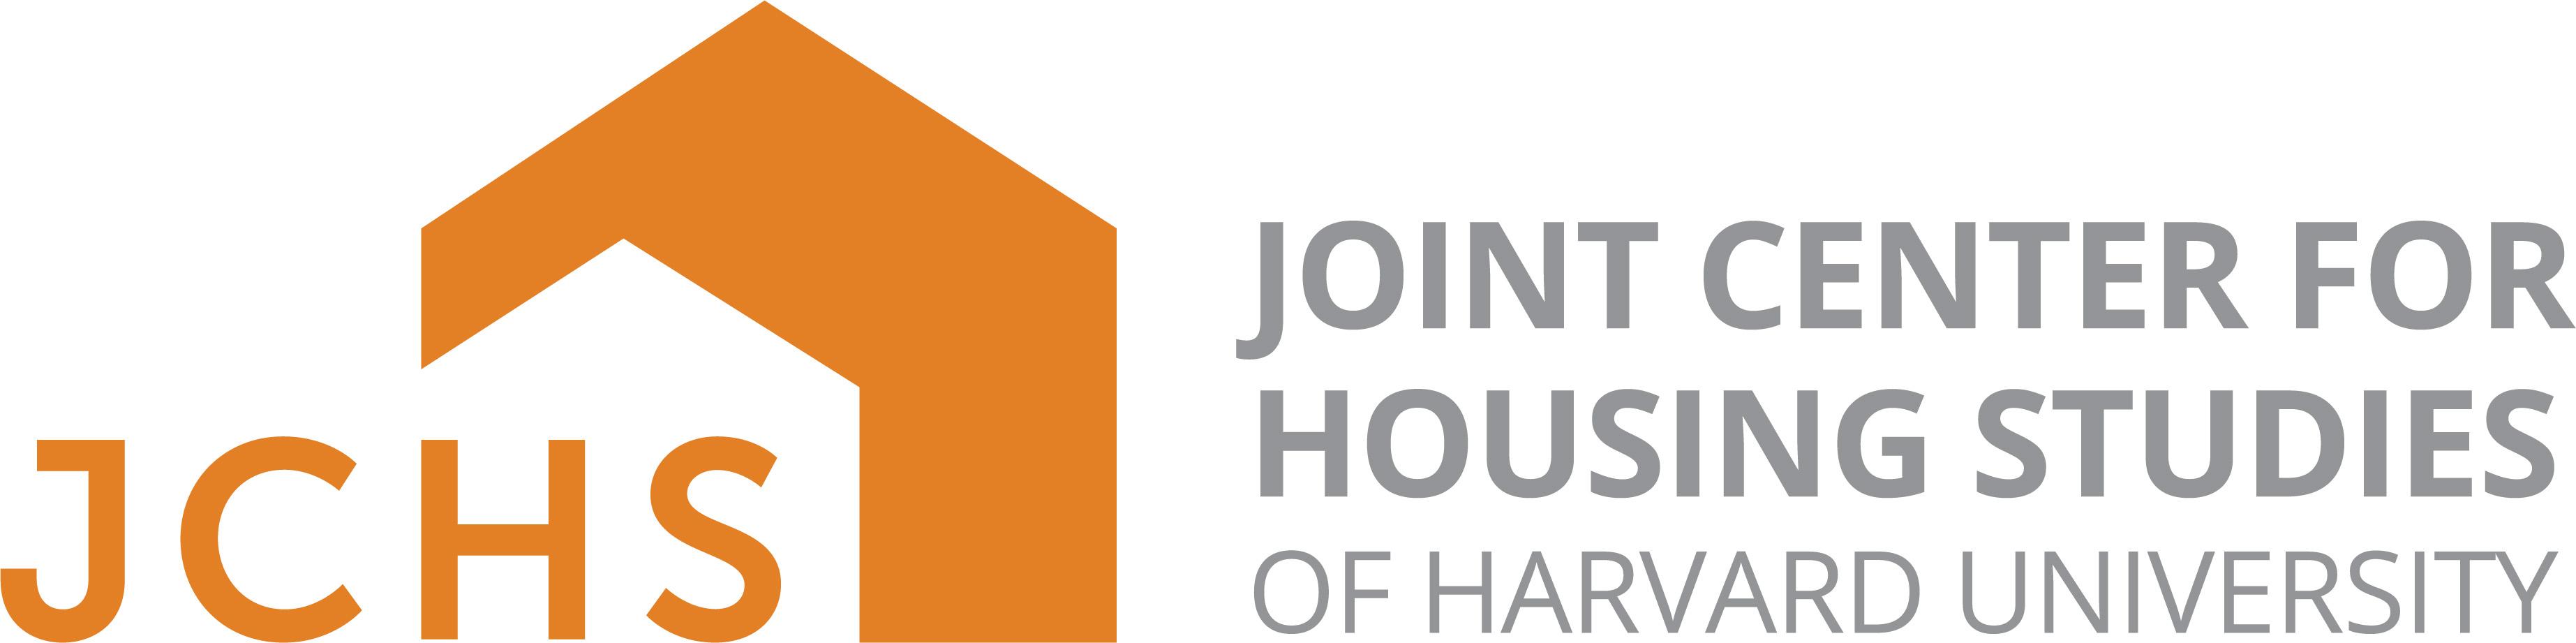 Joint Center For Housing Studies of Harvard University logo